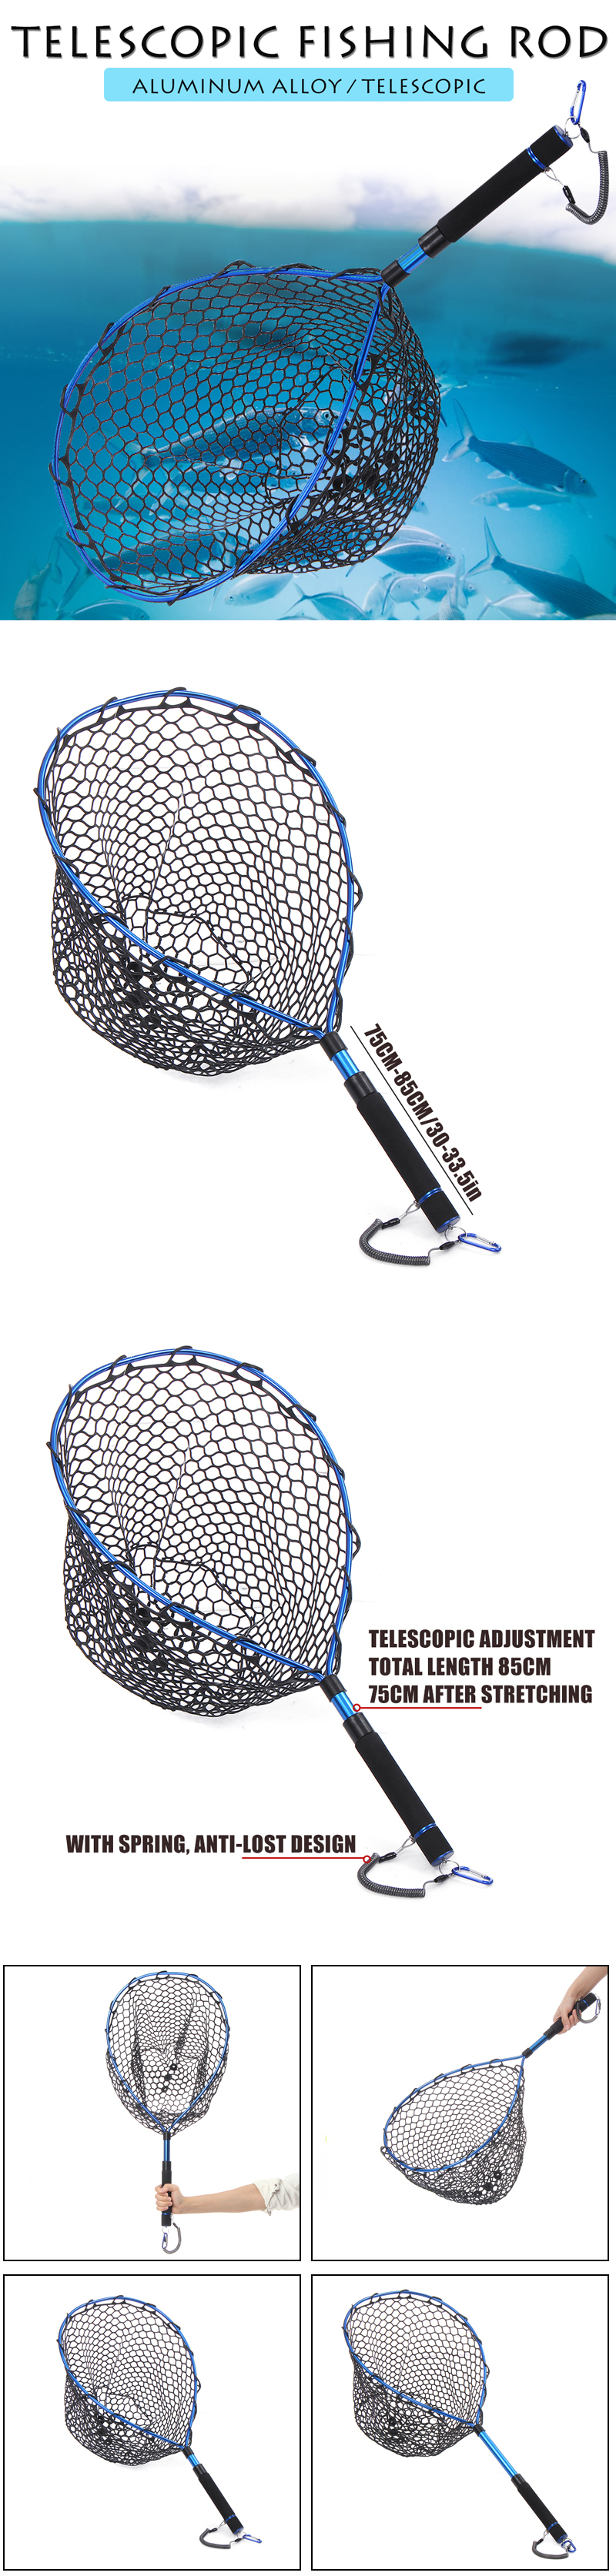 Zanlure-Aluminium-Alloy-Telescopic-Folding-Fishing-Mesh-Fish-Landing-Net-Fishing-Rod-1632475-1